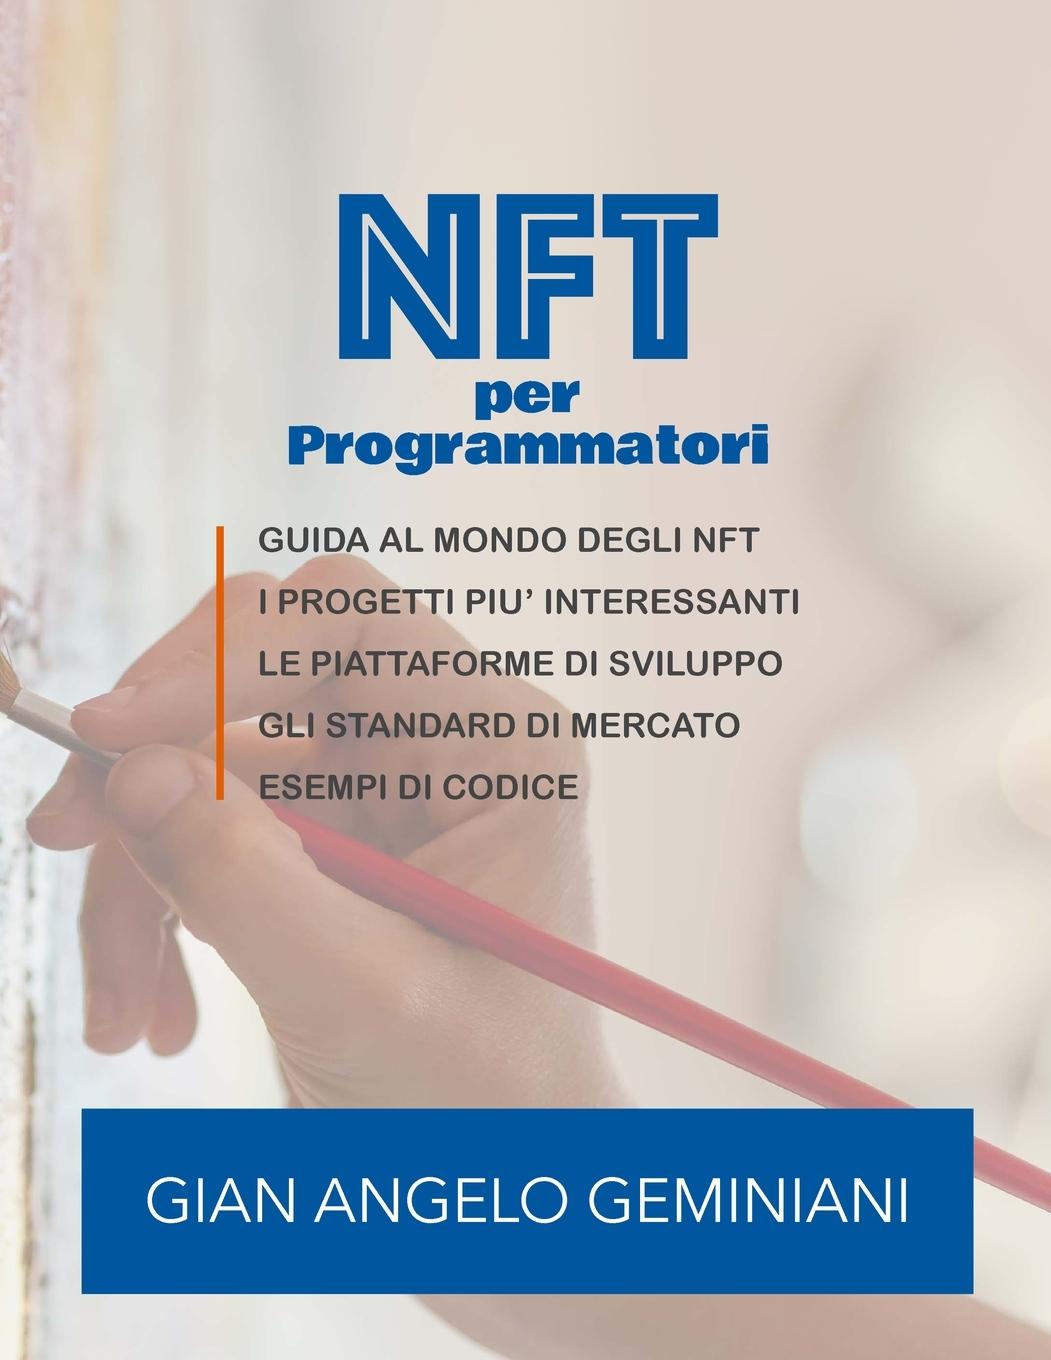 Book NFT per Programmatori 